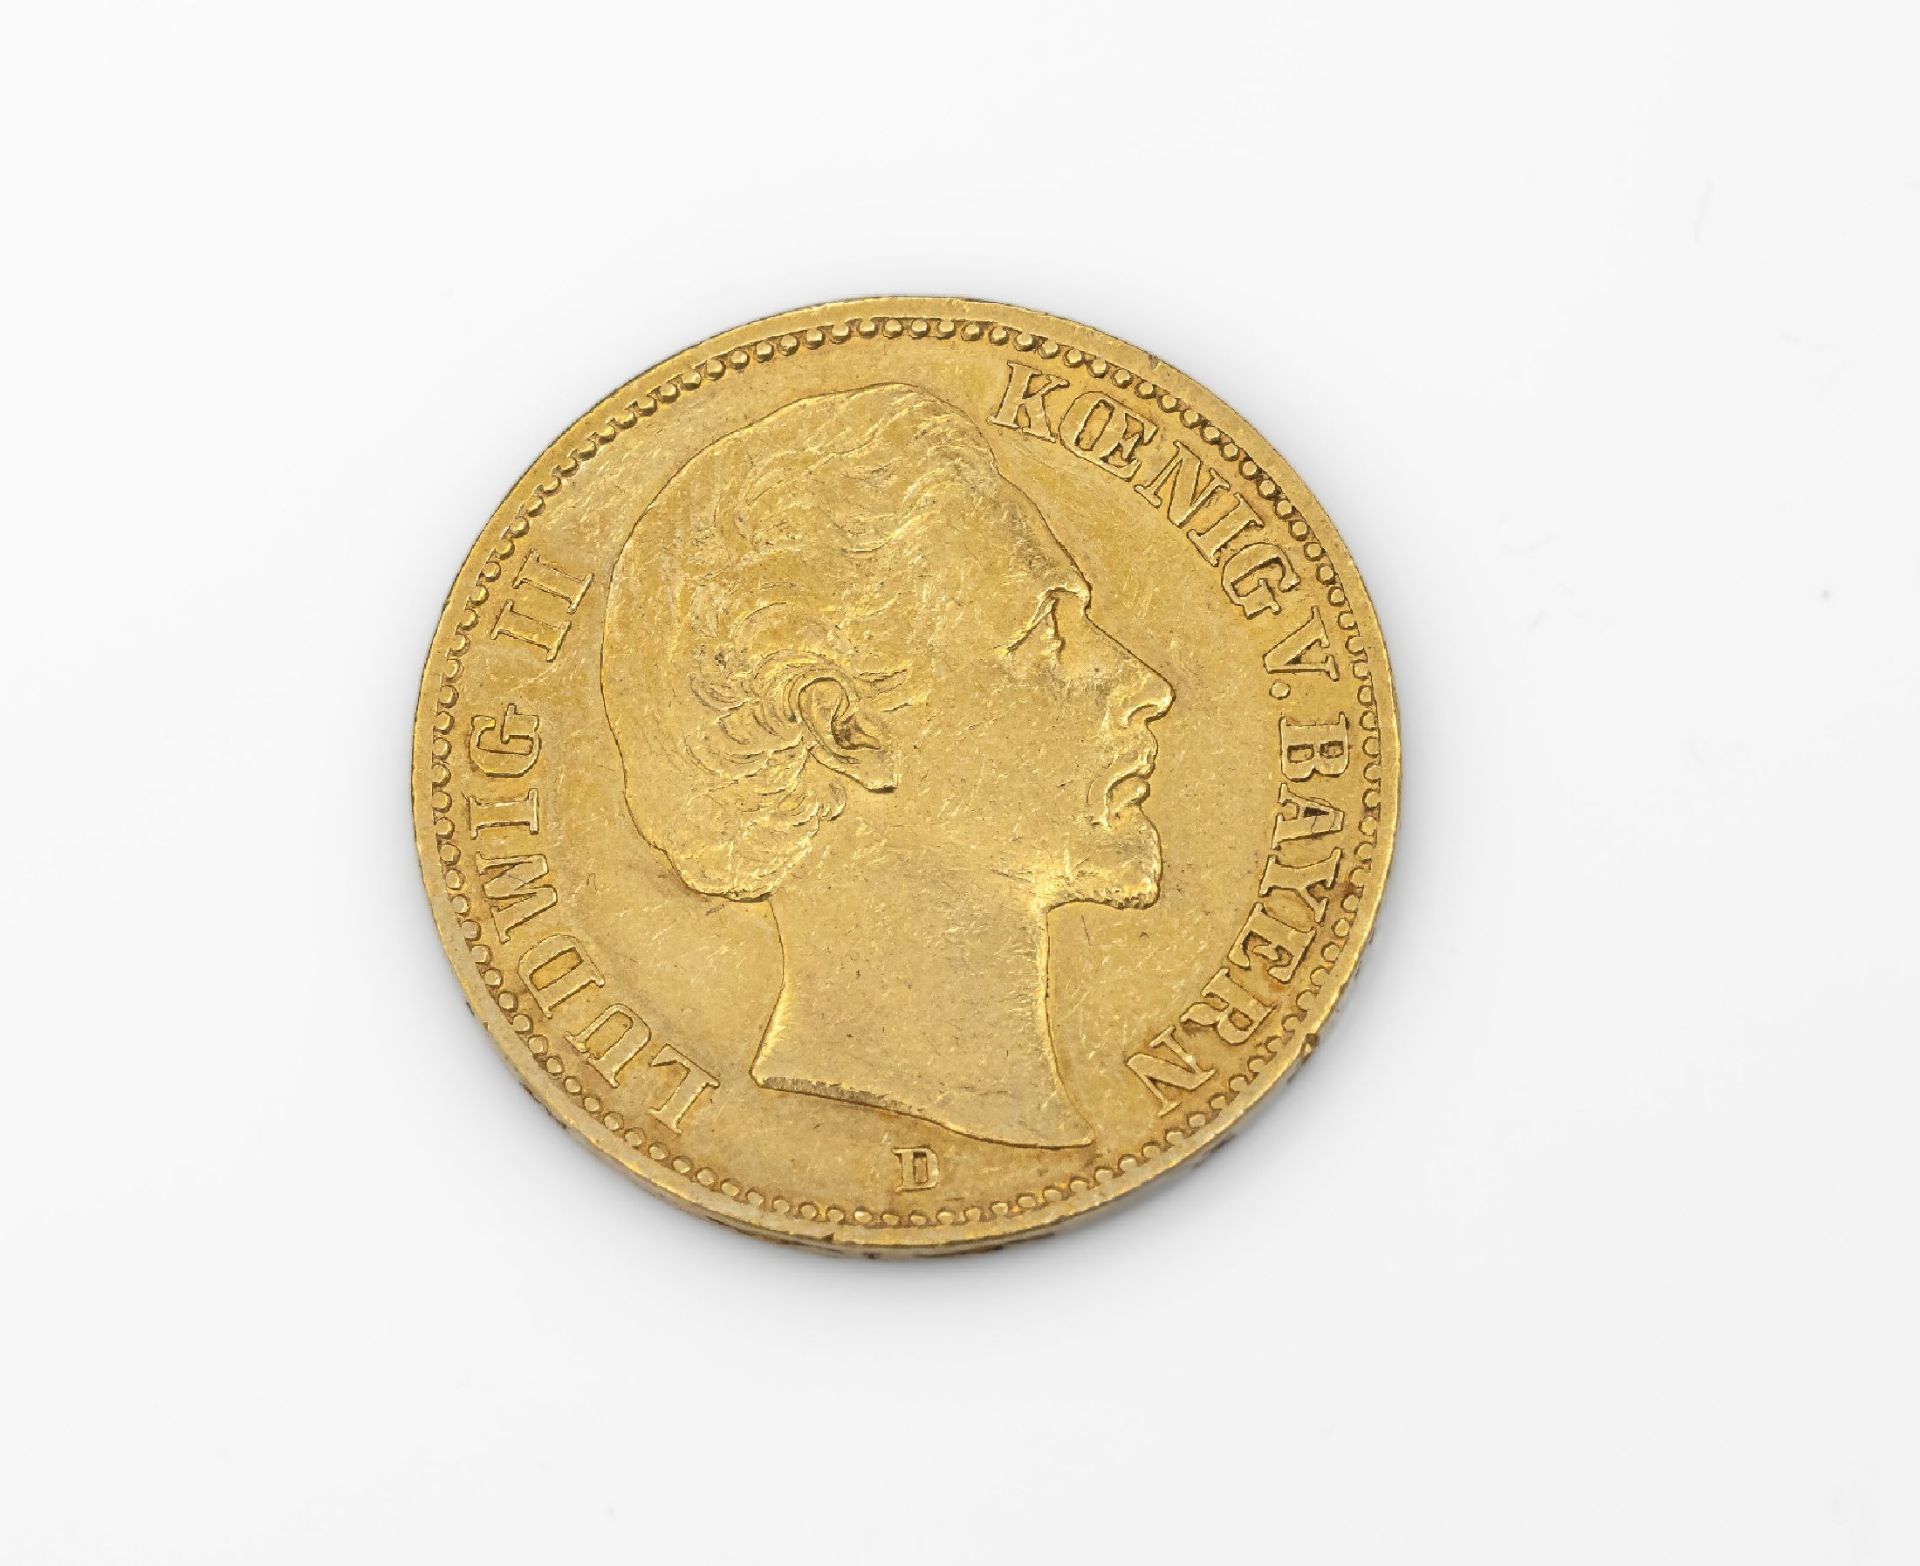 Goldmünze 20 Mark Deutsches Reich 1873, Ludwig II. König